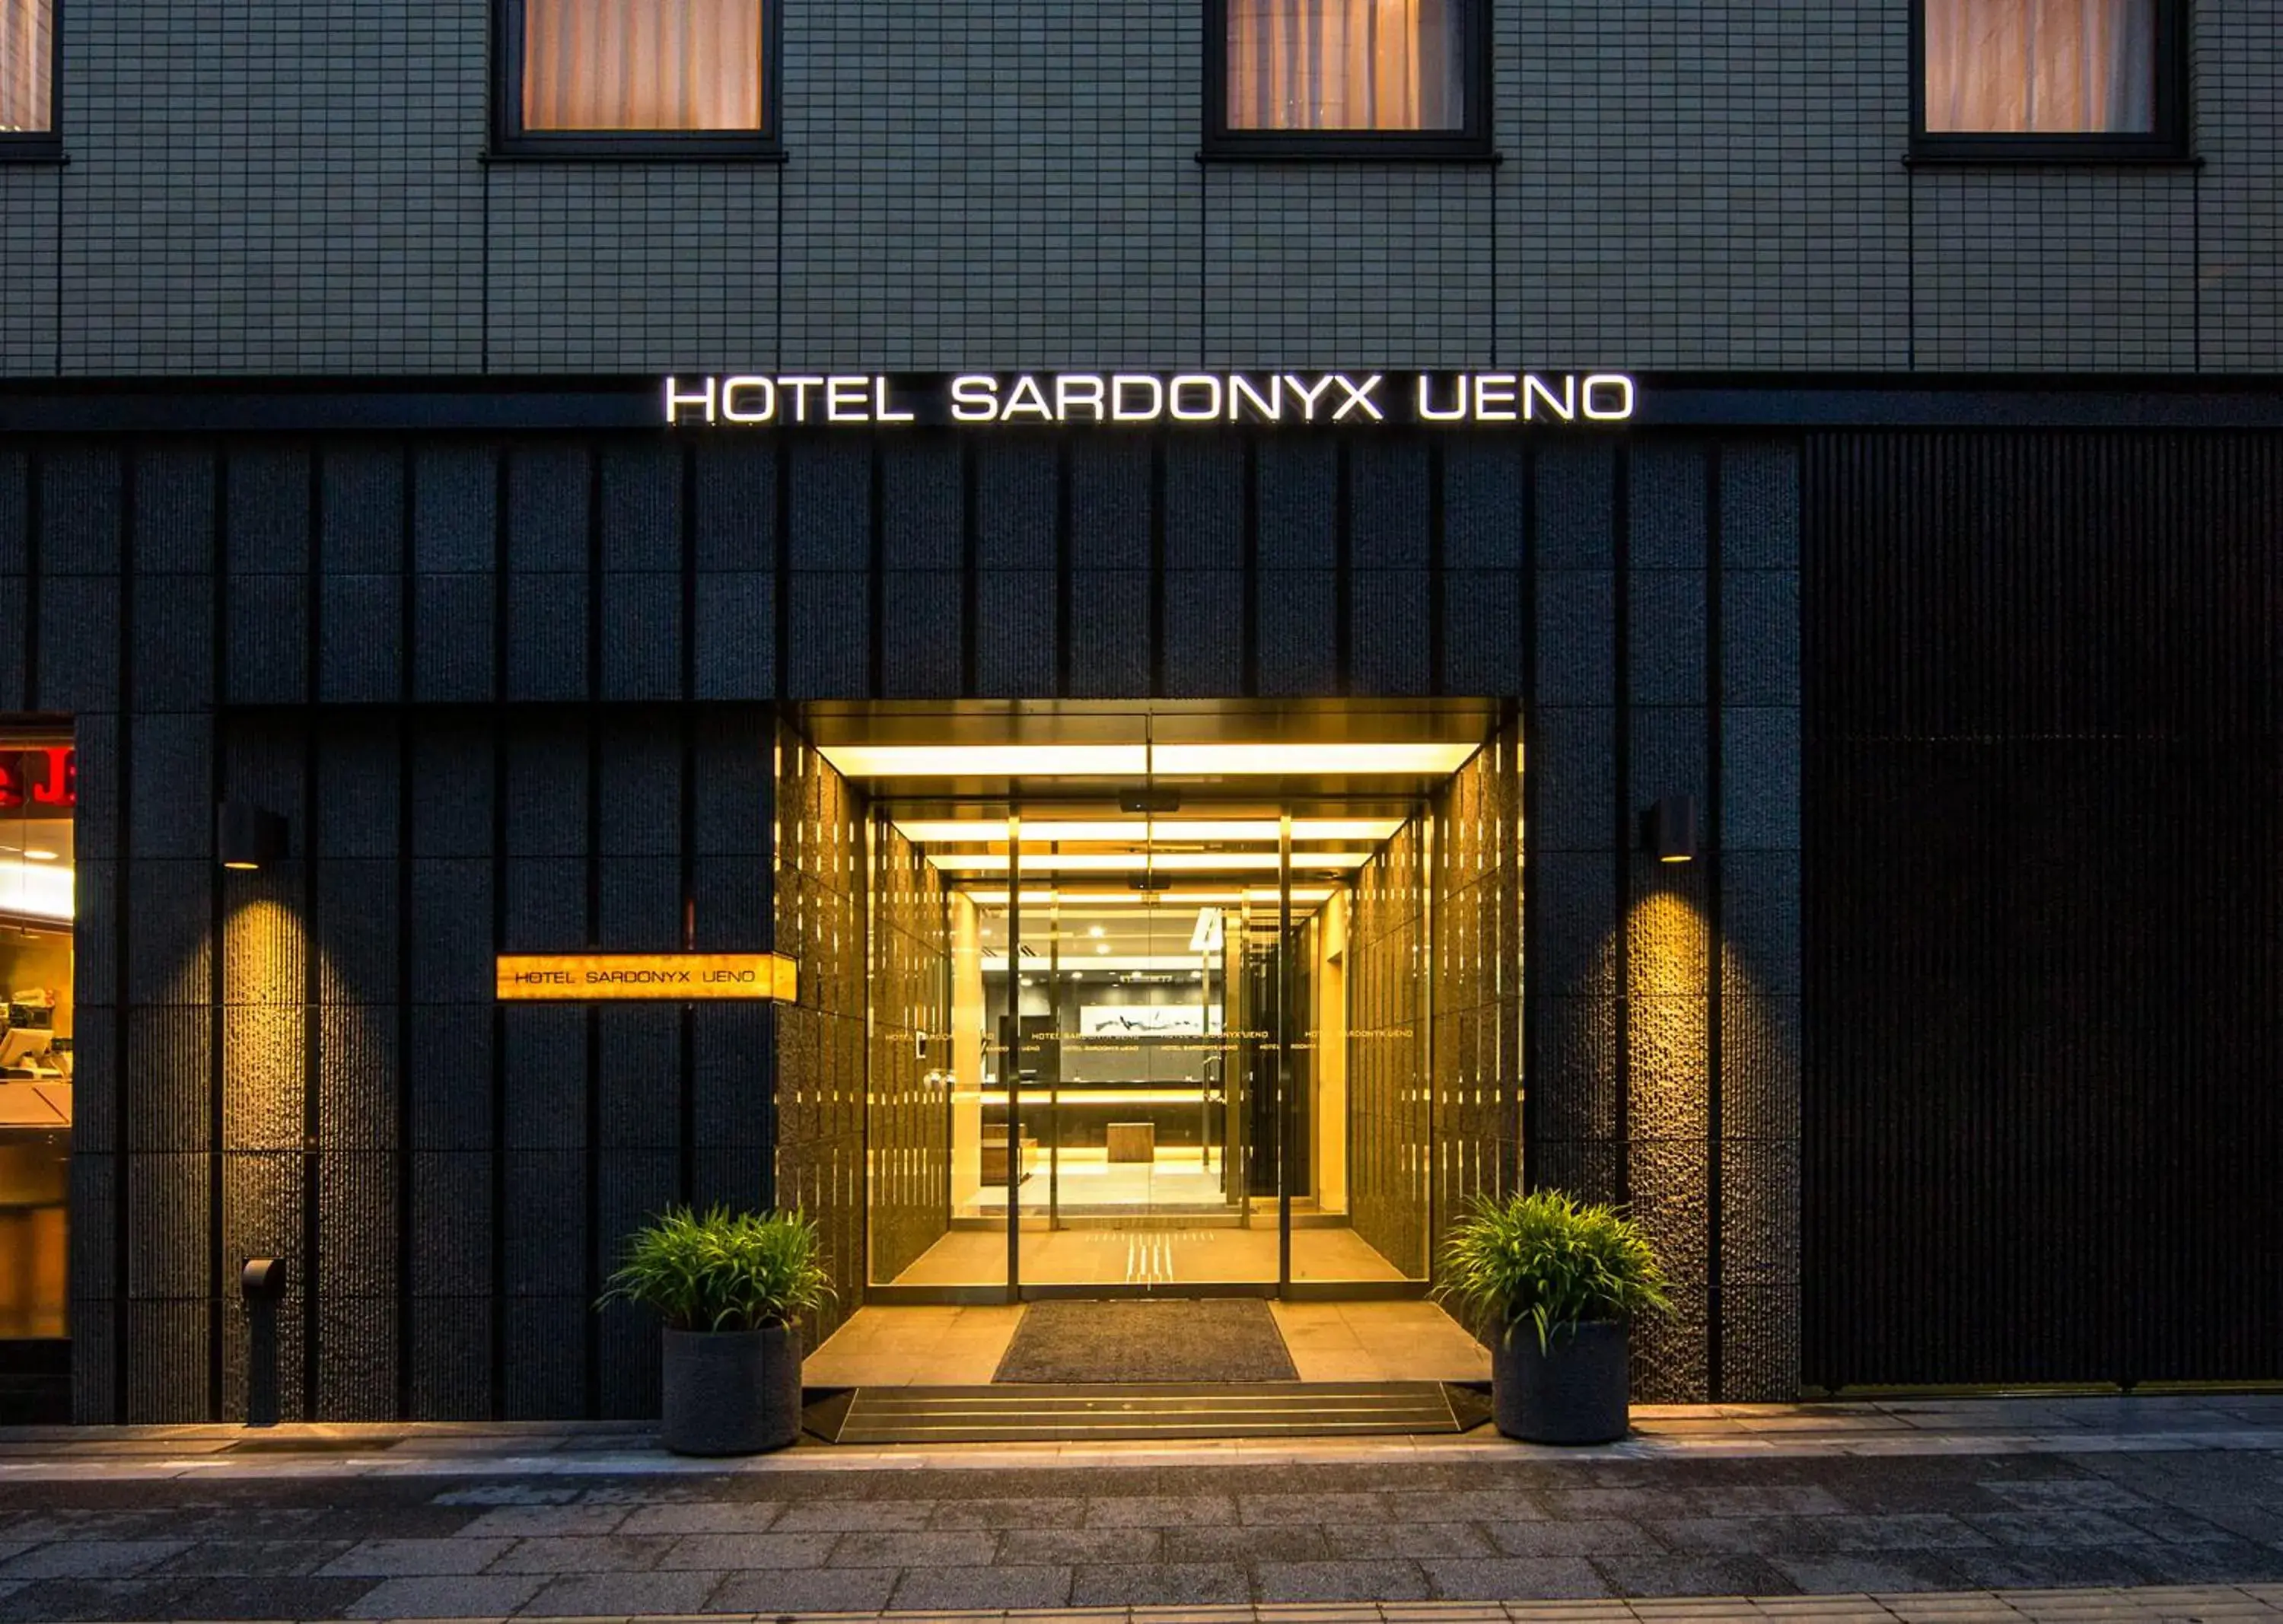 Facade/entrance in Hotel Sardonyx Ueno